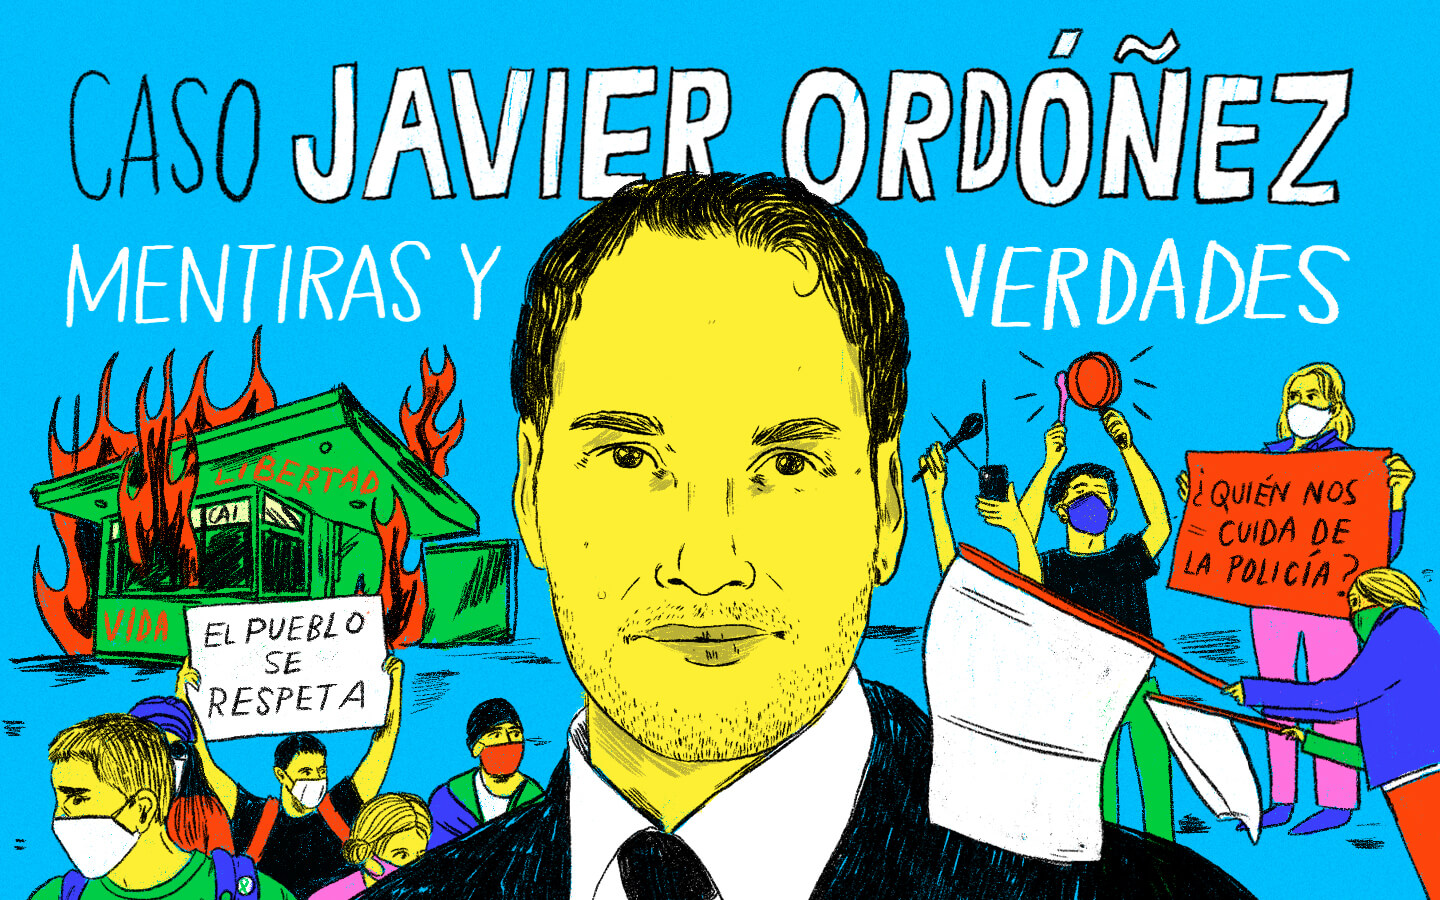 Caso Javier Ordoñez - Mentiras y verdades